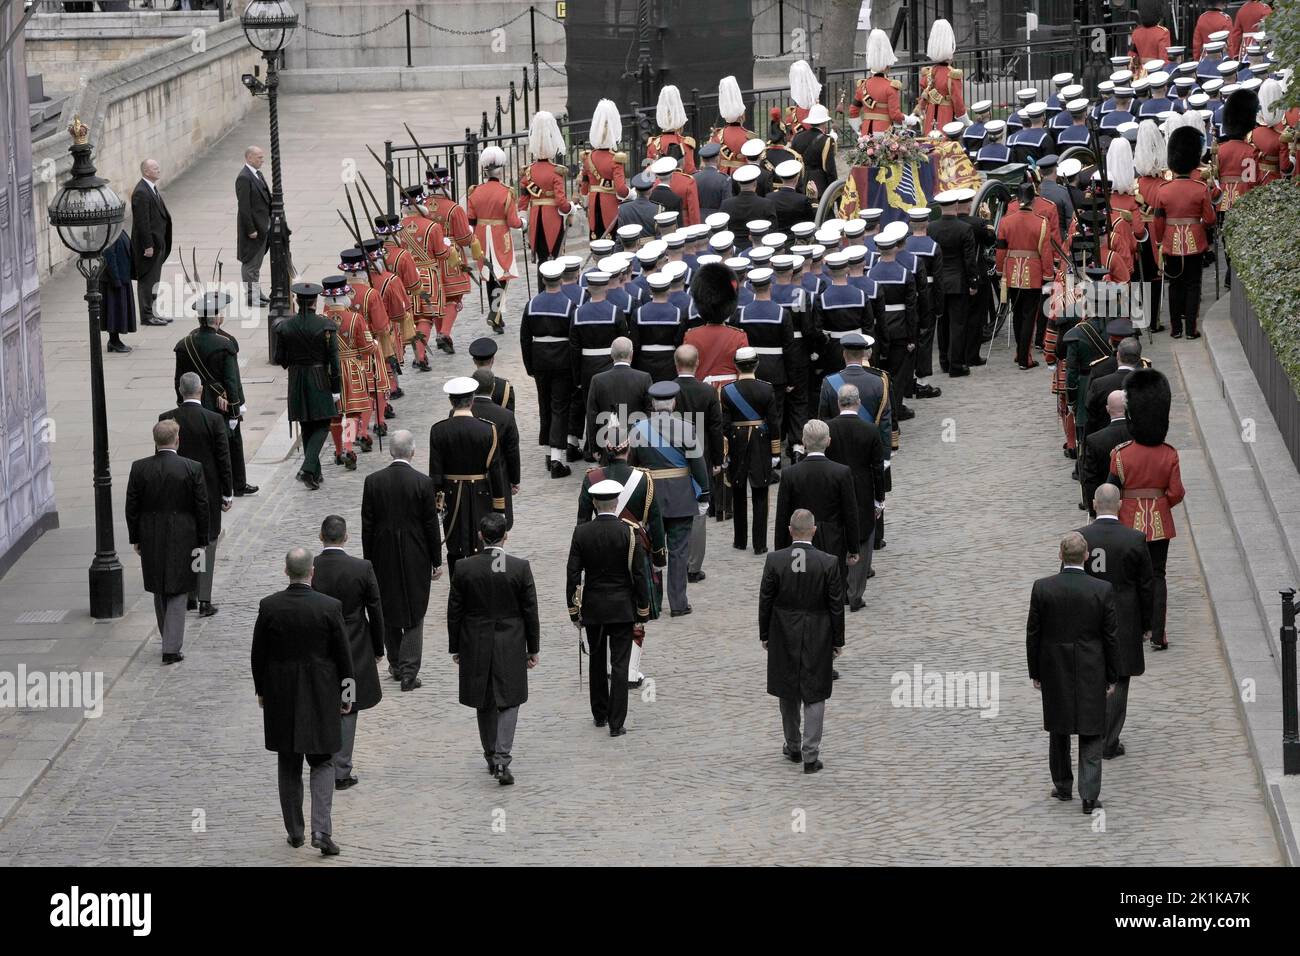 Der Sarg von Königin Elizabeth II. Auf einem Waffenwagen, der von Soldaten der Royal Navy gezogen wurde, um von der Westminster Hall zum State Funeral zu gelangen, der in Westminster Abbey, London, abgehalten wird. Bilddatum: Montag, 19. September 2022. Stockfoto